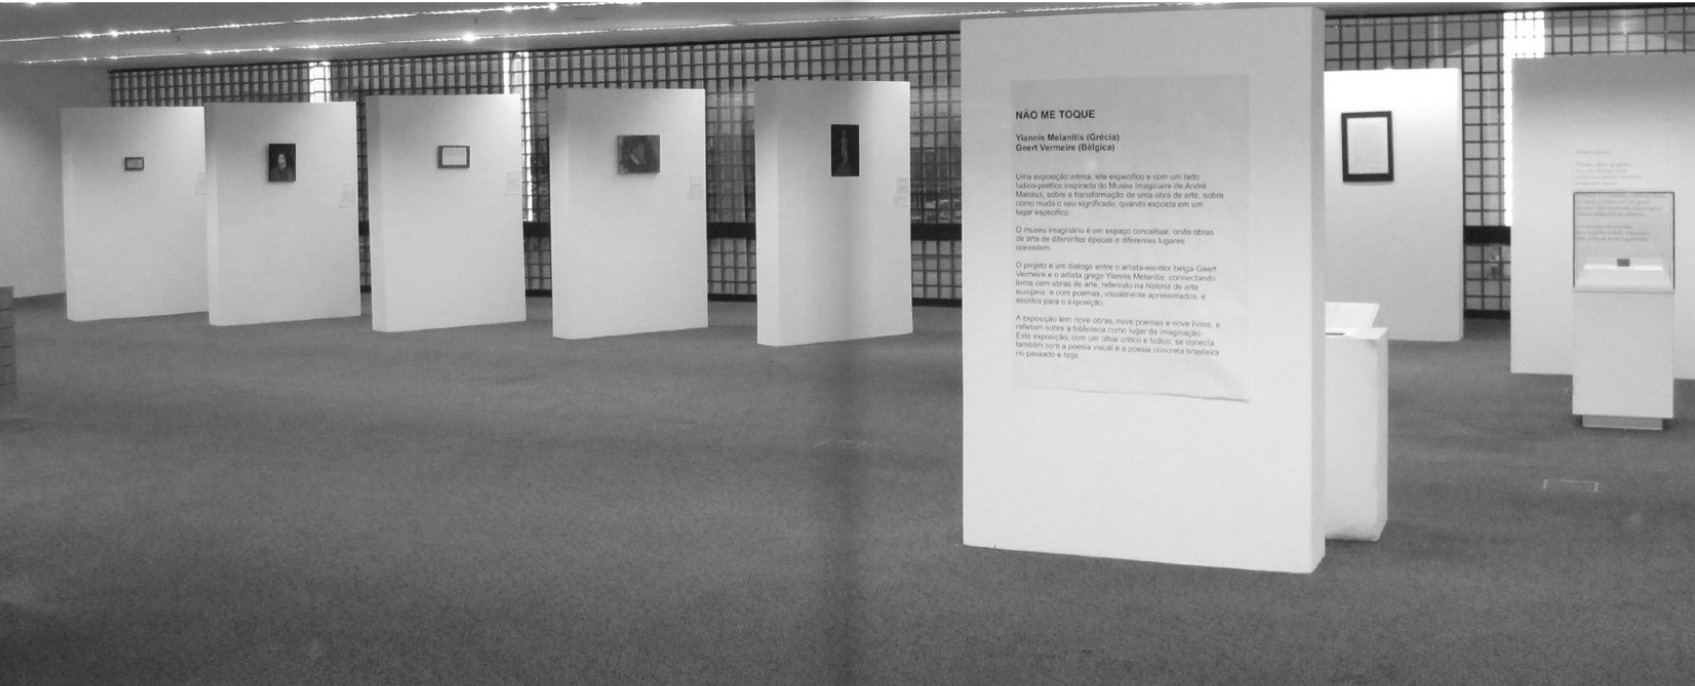 扬尼斯·梅拉尼提斯作品《一位虚构艺术家的虚构博物馆》